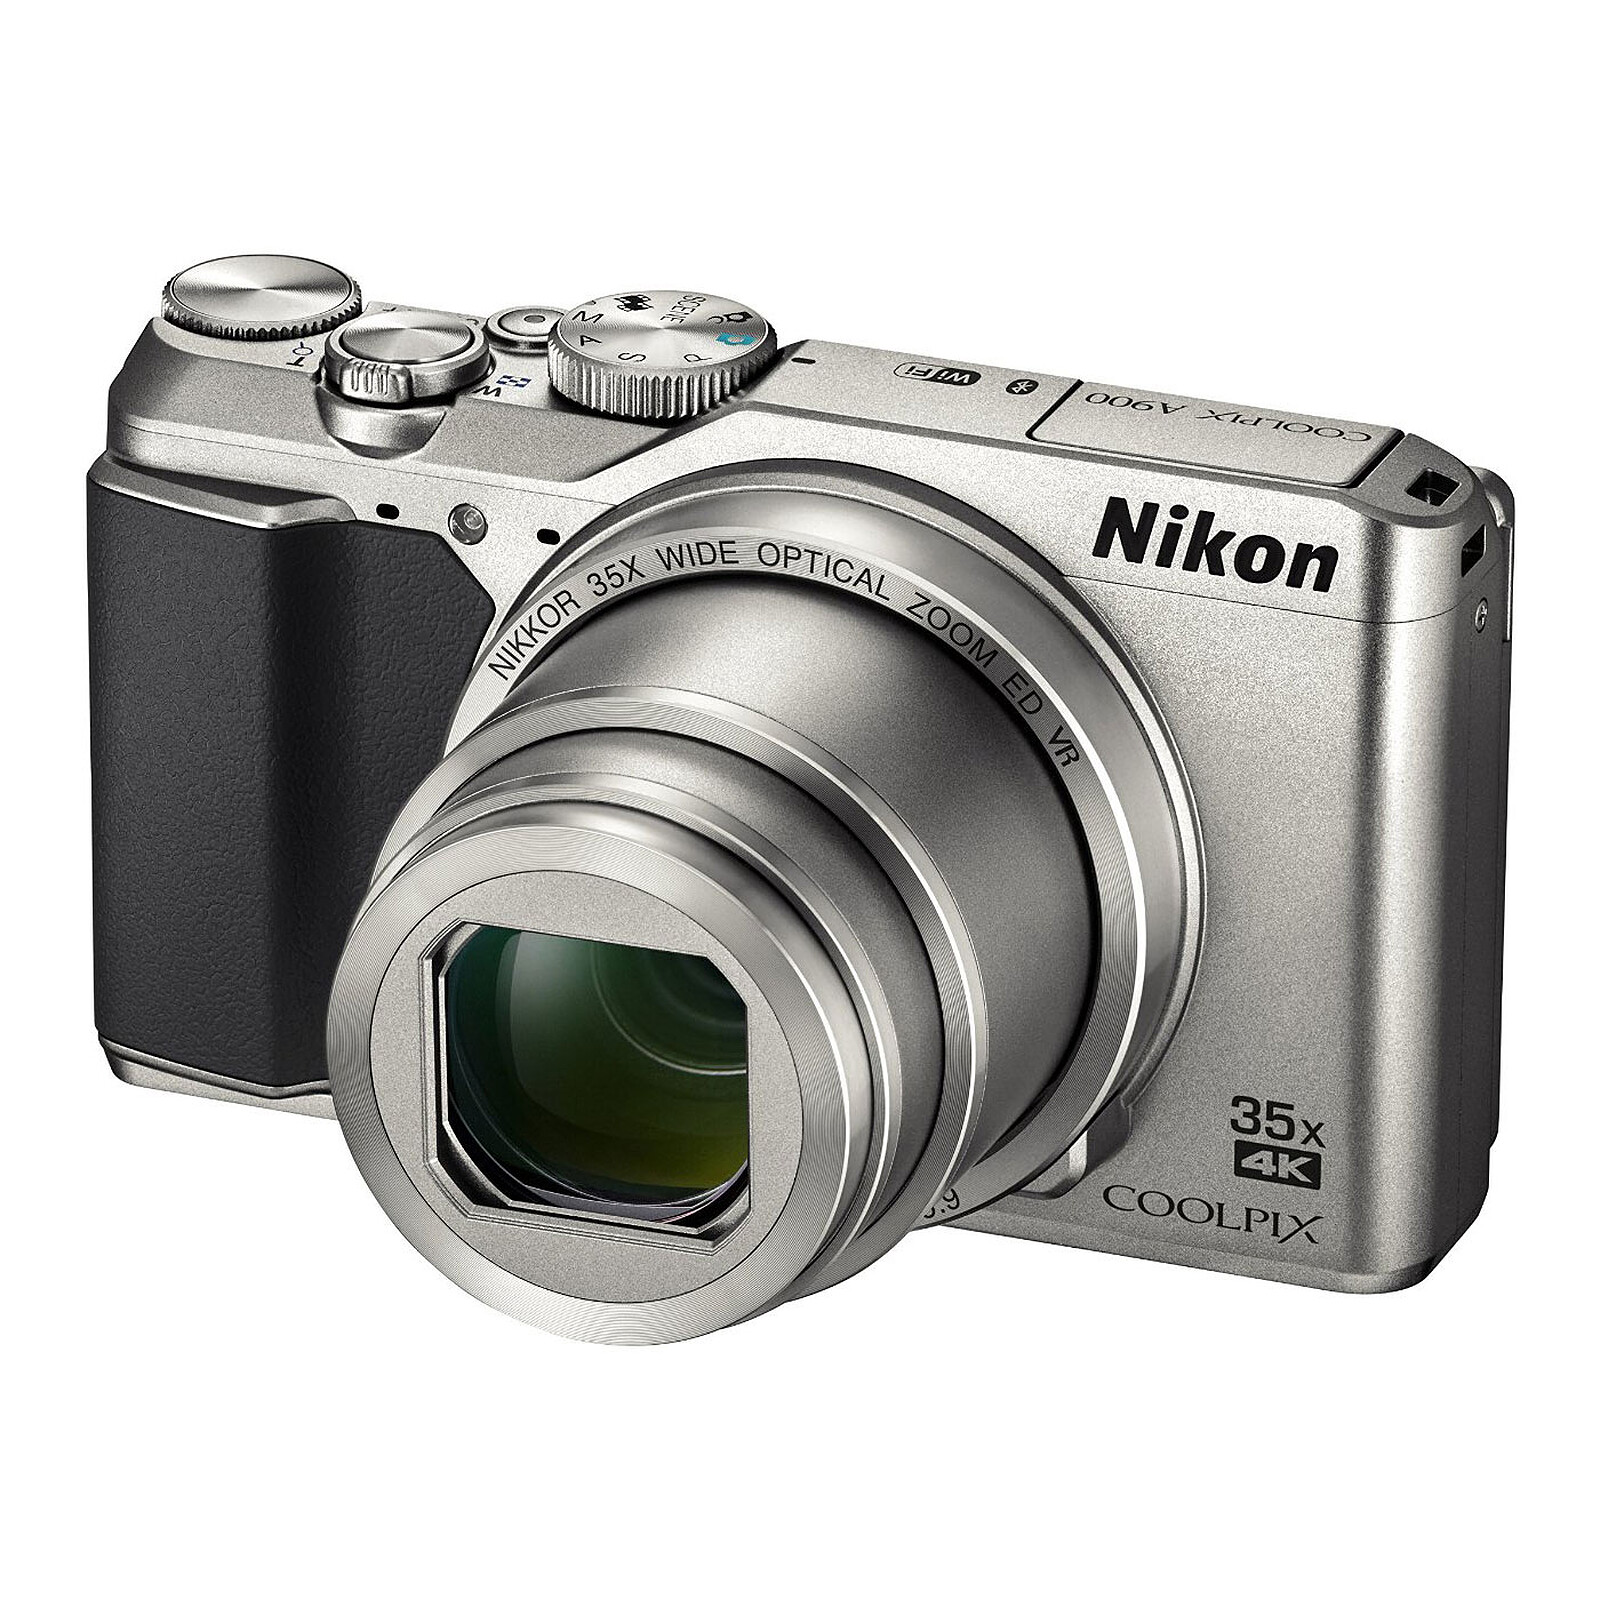 Nikon Coolpix A900 Argent - Appareil photo numérique - Garantie 3 ans LDLC